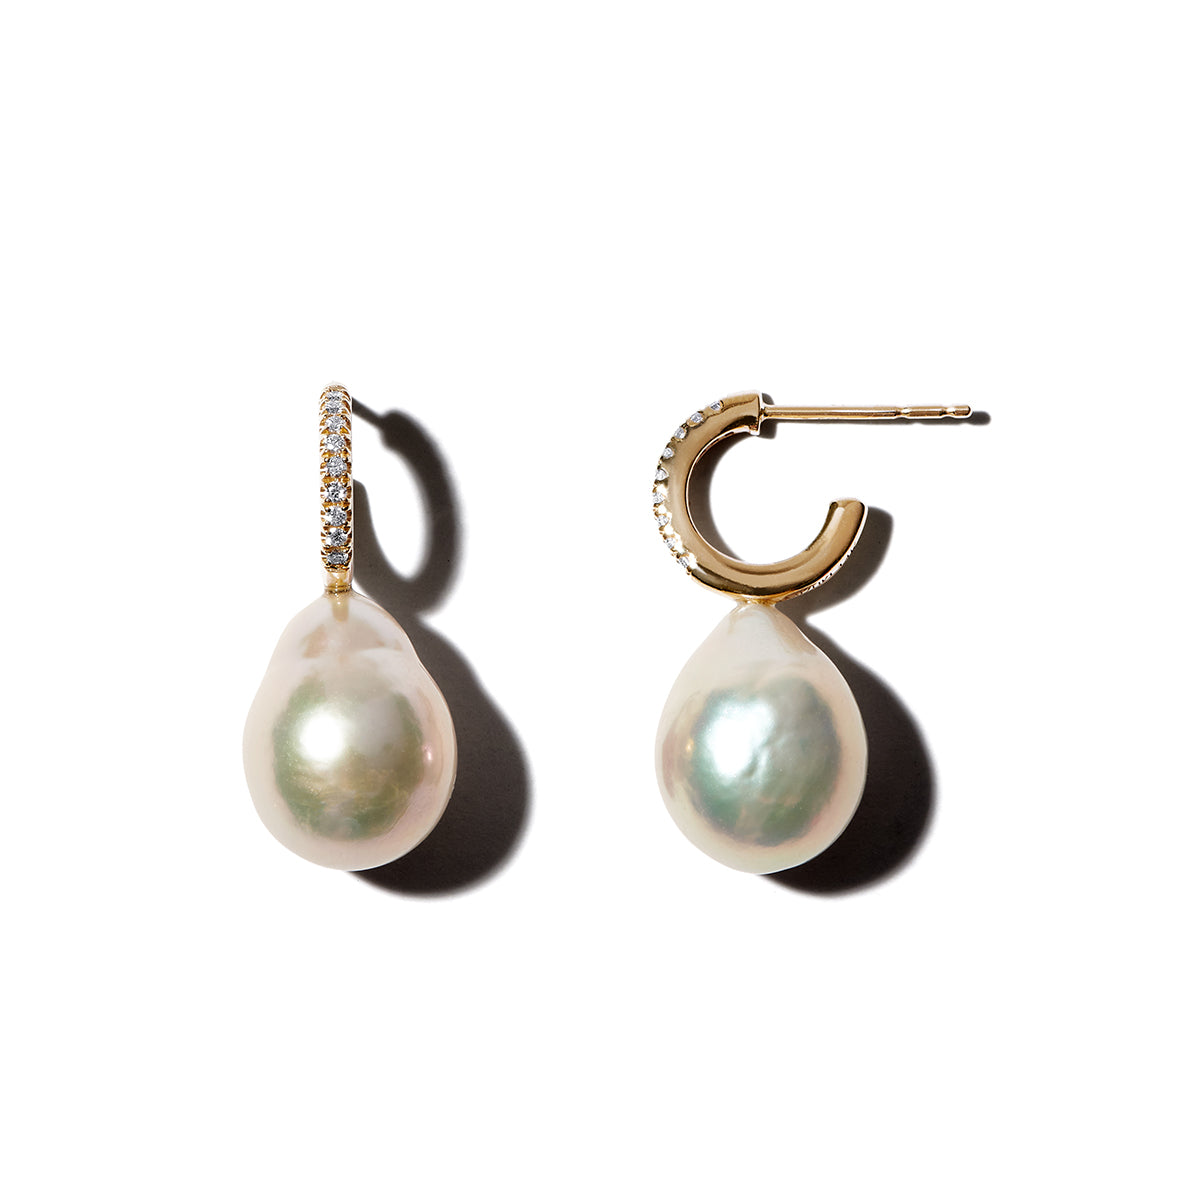 Diamond Hoops with Pearl Drop Earrings